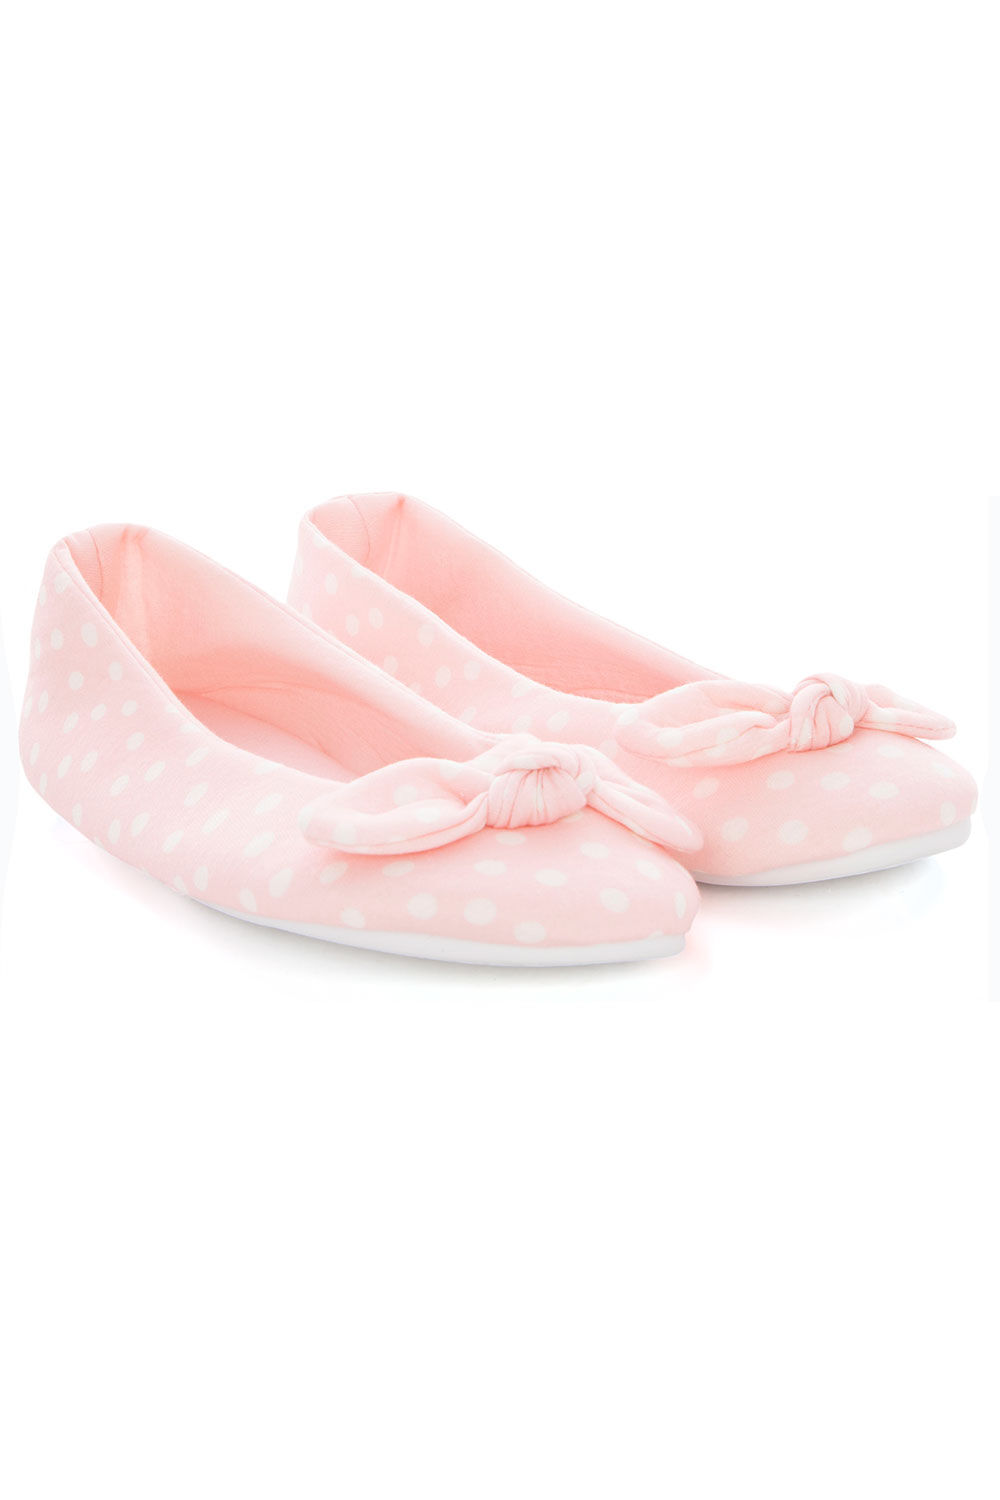 Buy Ballerina Slippers Online - ROSARINI